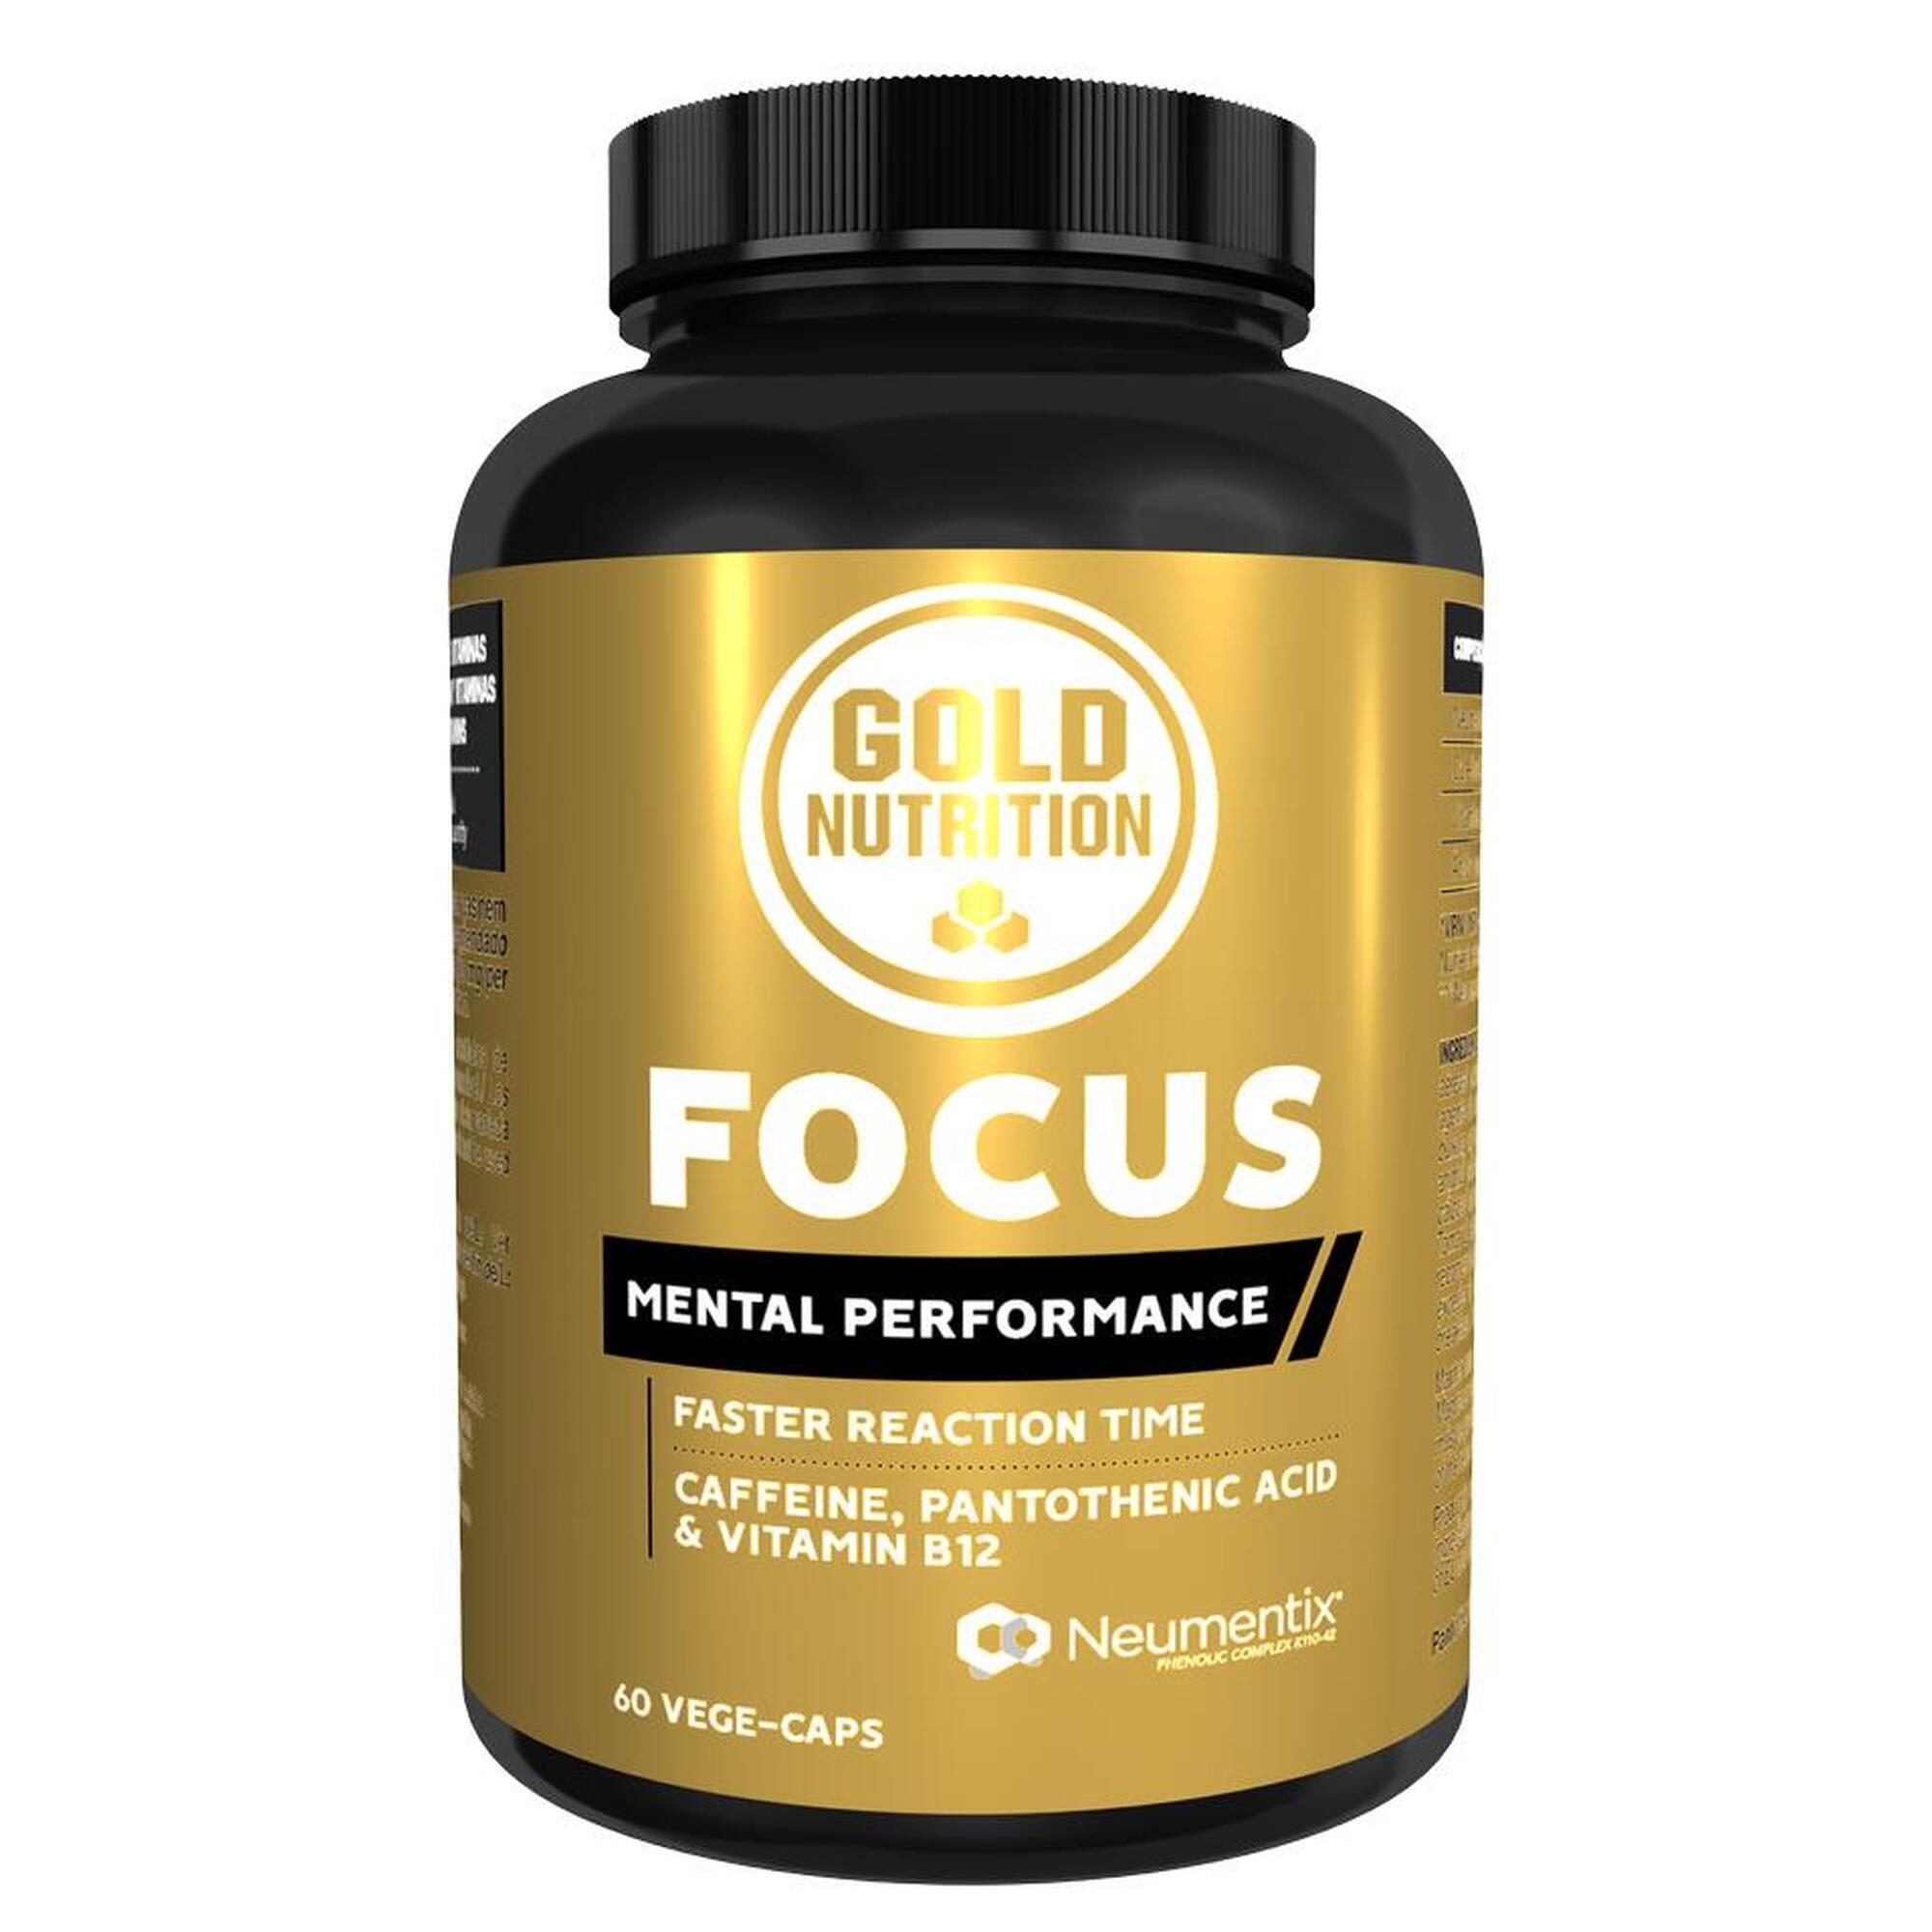 Supliment alimentar pentru functia cognitiva, Focus GoldNutrition, 60 capsule